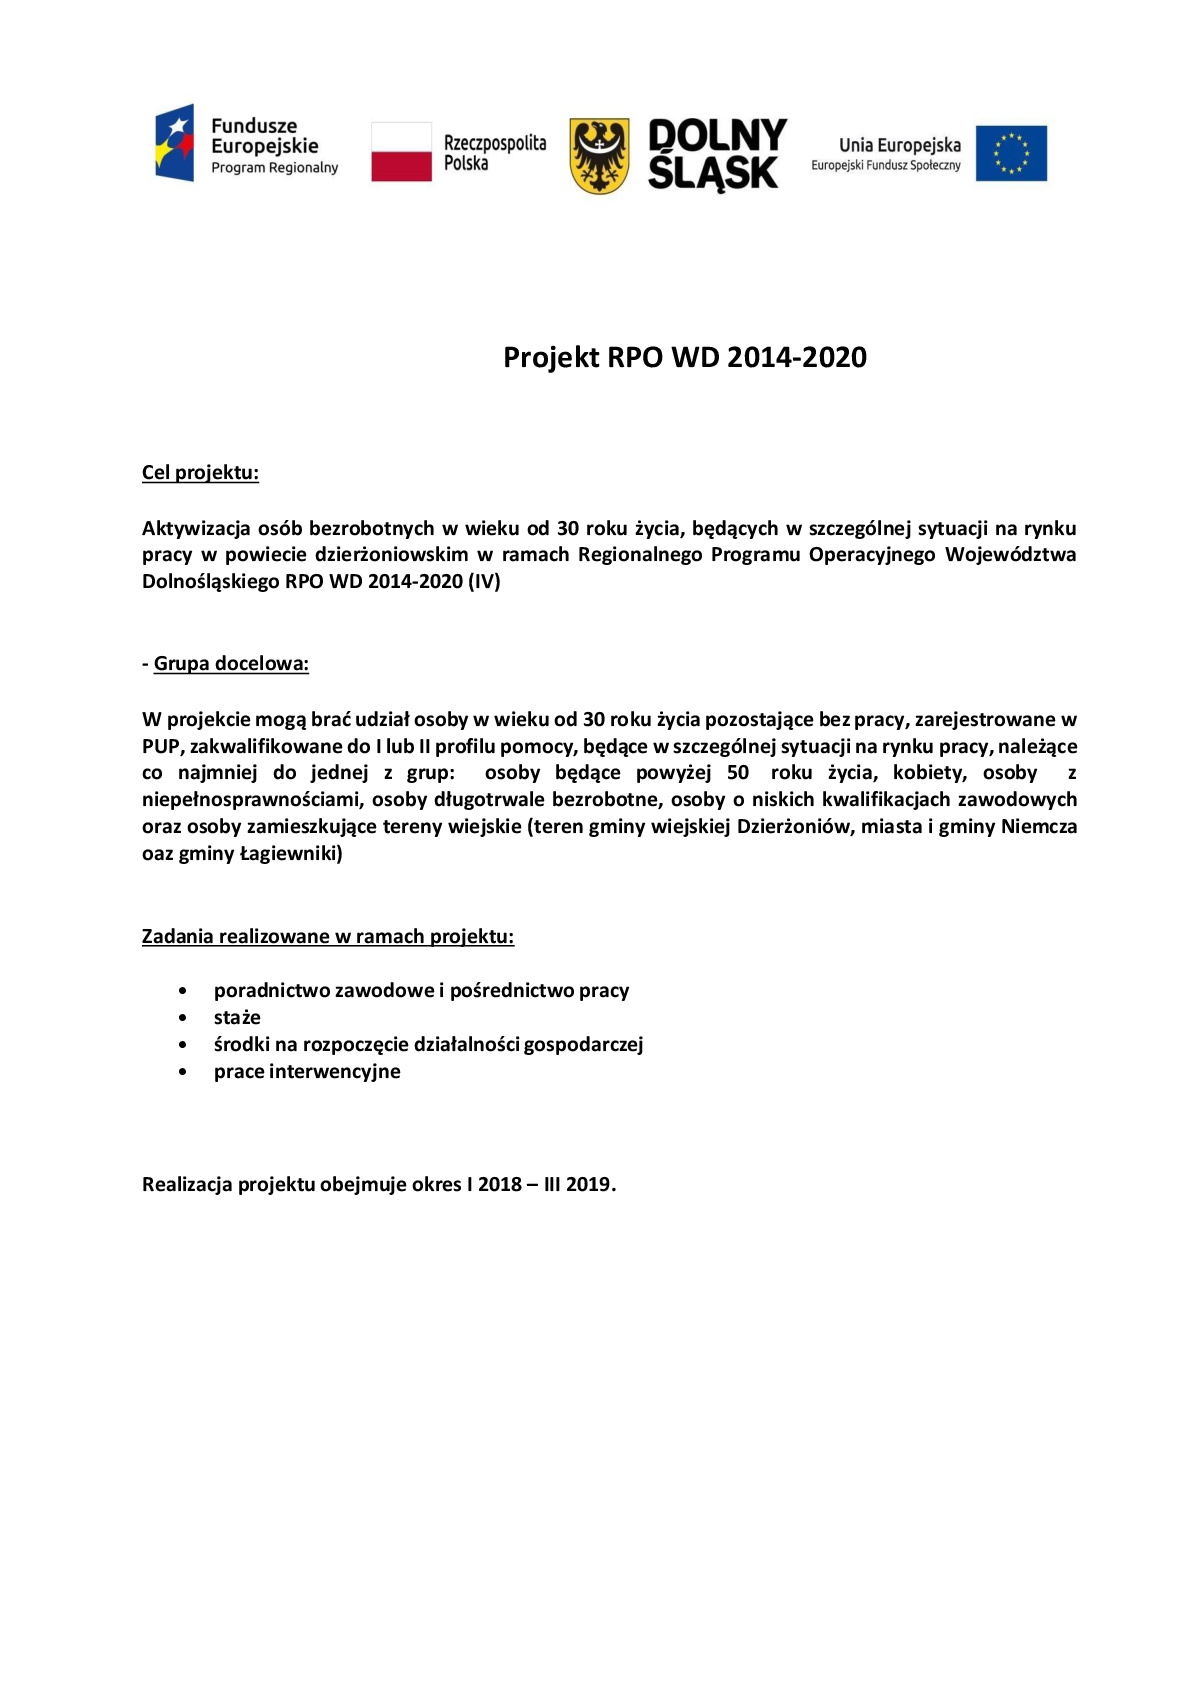 Obrazek dla: Aktywizacja osób bezrobotnych w wieku od 30 roku życia będących w szczególnej sytuacji na rynku pracy w powiecie dzierżoniowskim w ramach Regionalnego Projektu Operacyjnego Województwa Dolnośląskiego RPO WD 2014-2020 (IV)